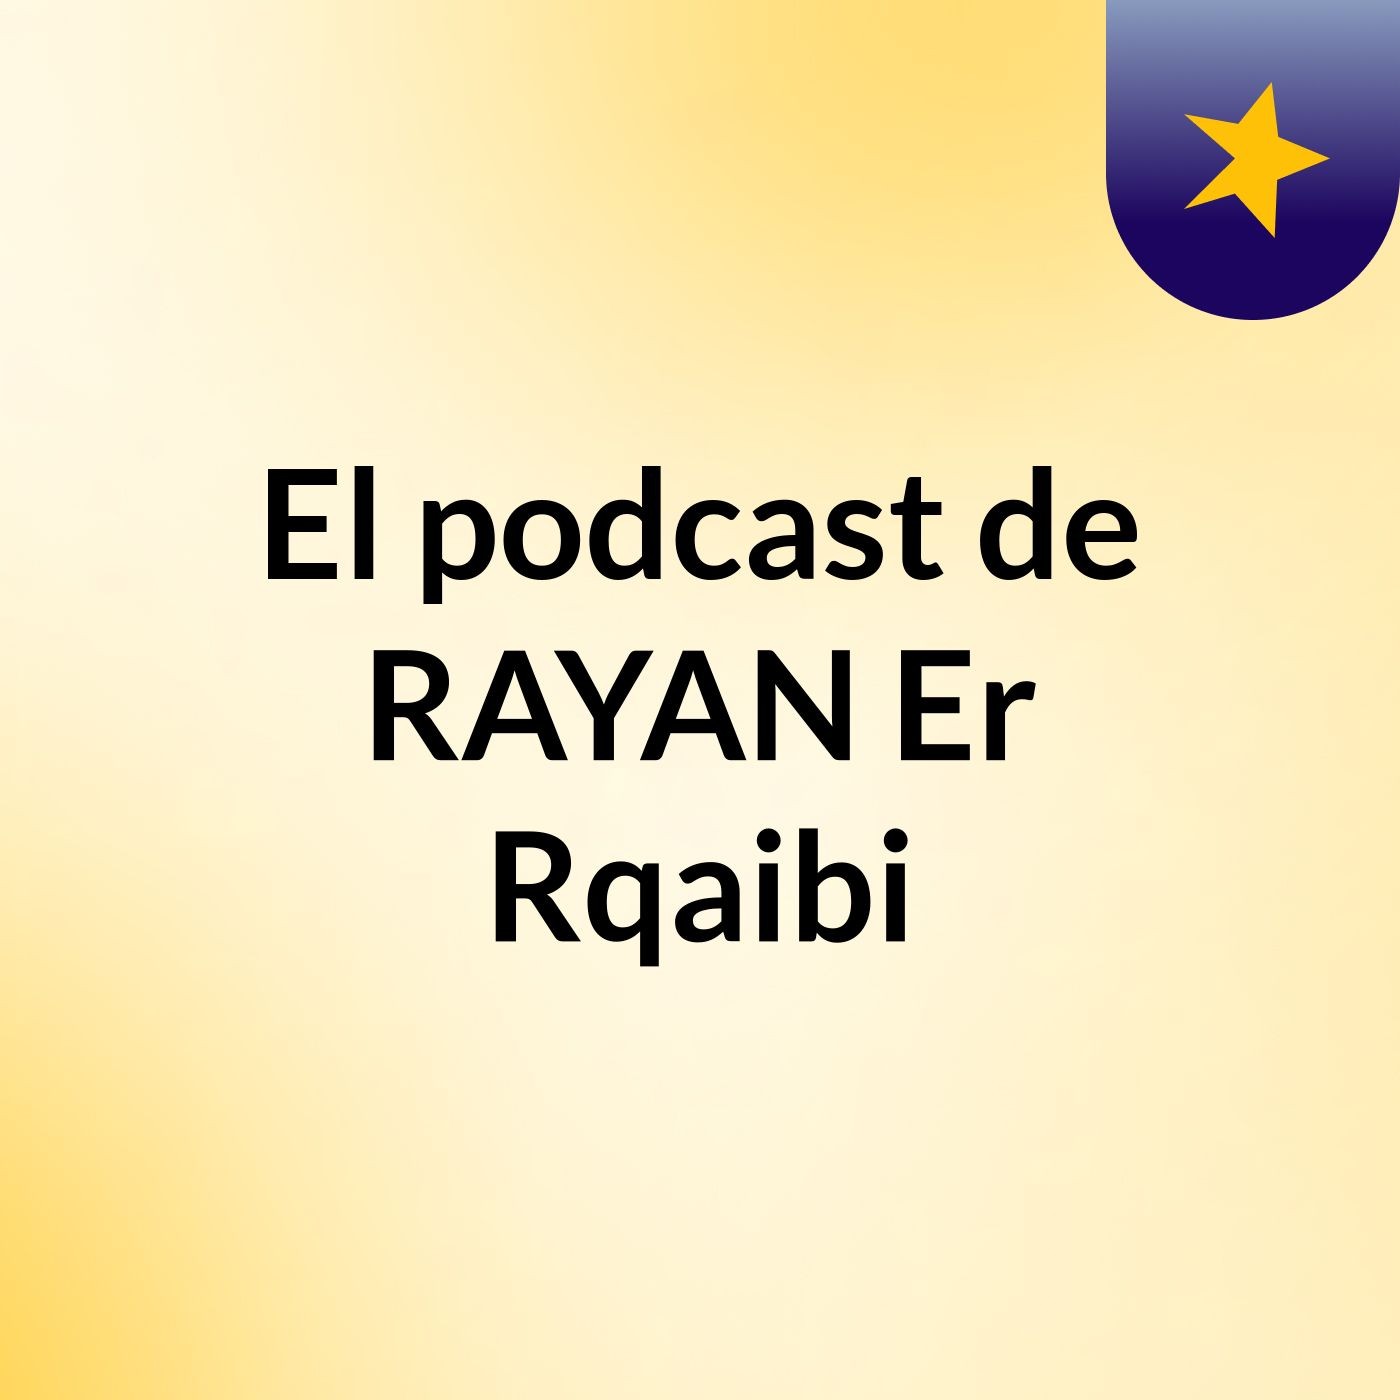 El podcast de RAYAN Er Rqaibi